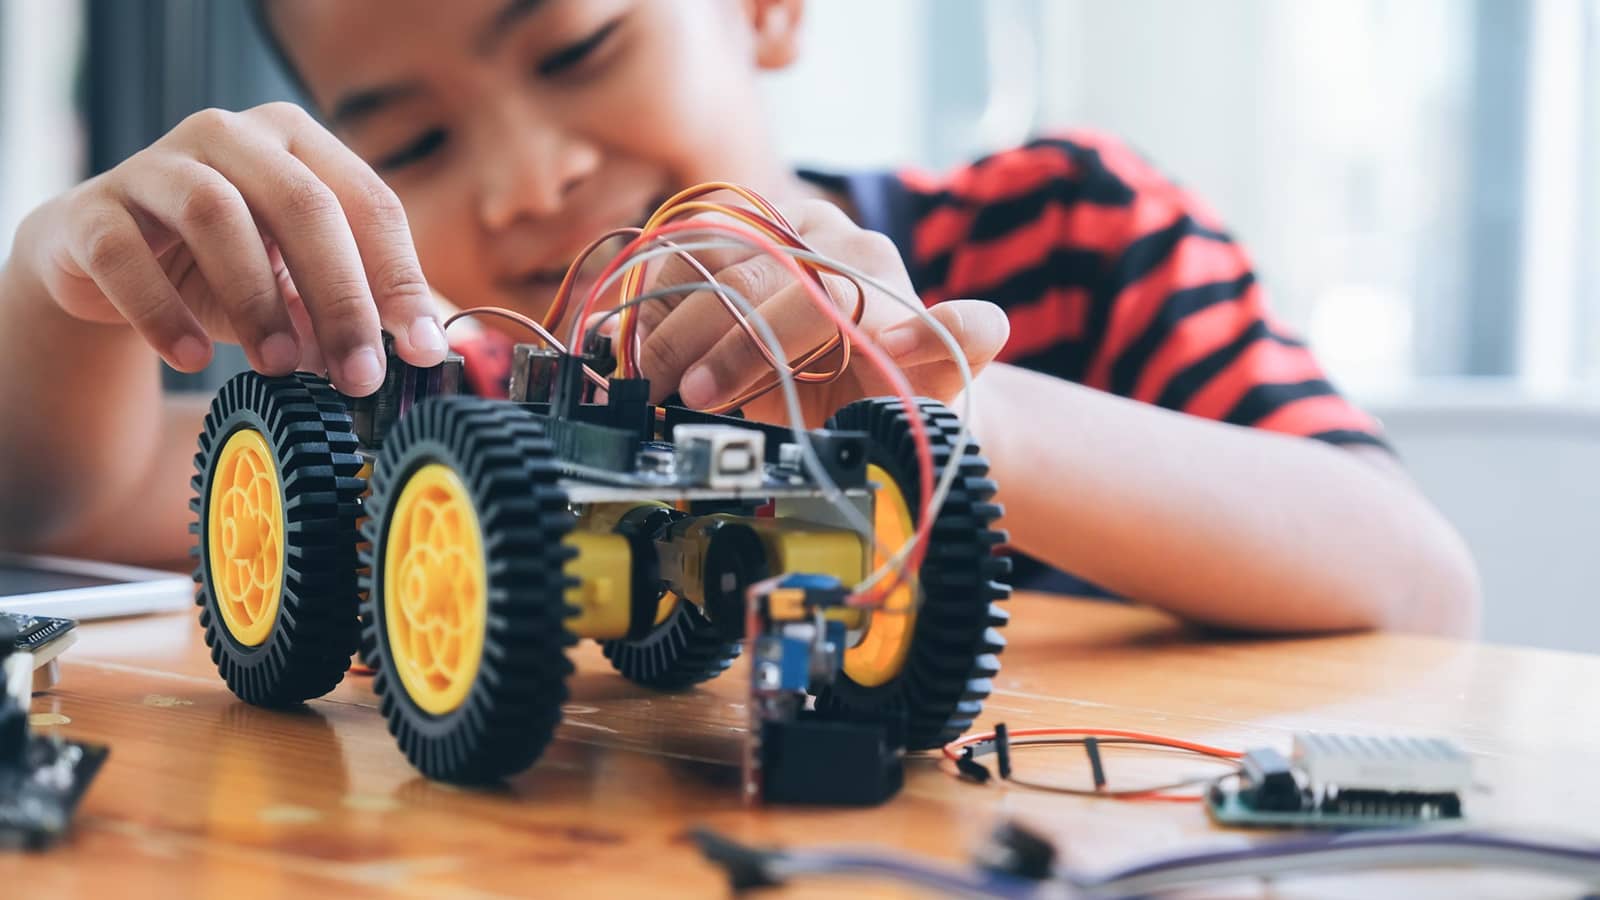 La diversión y el aprendizaje con juguetes de robótica